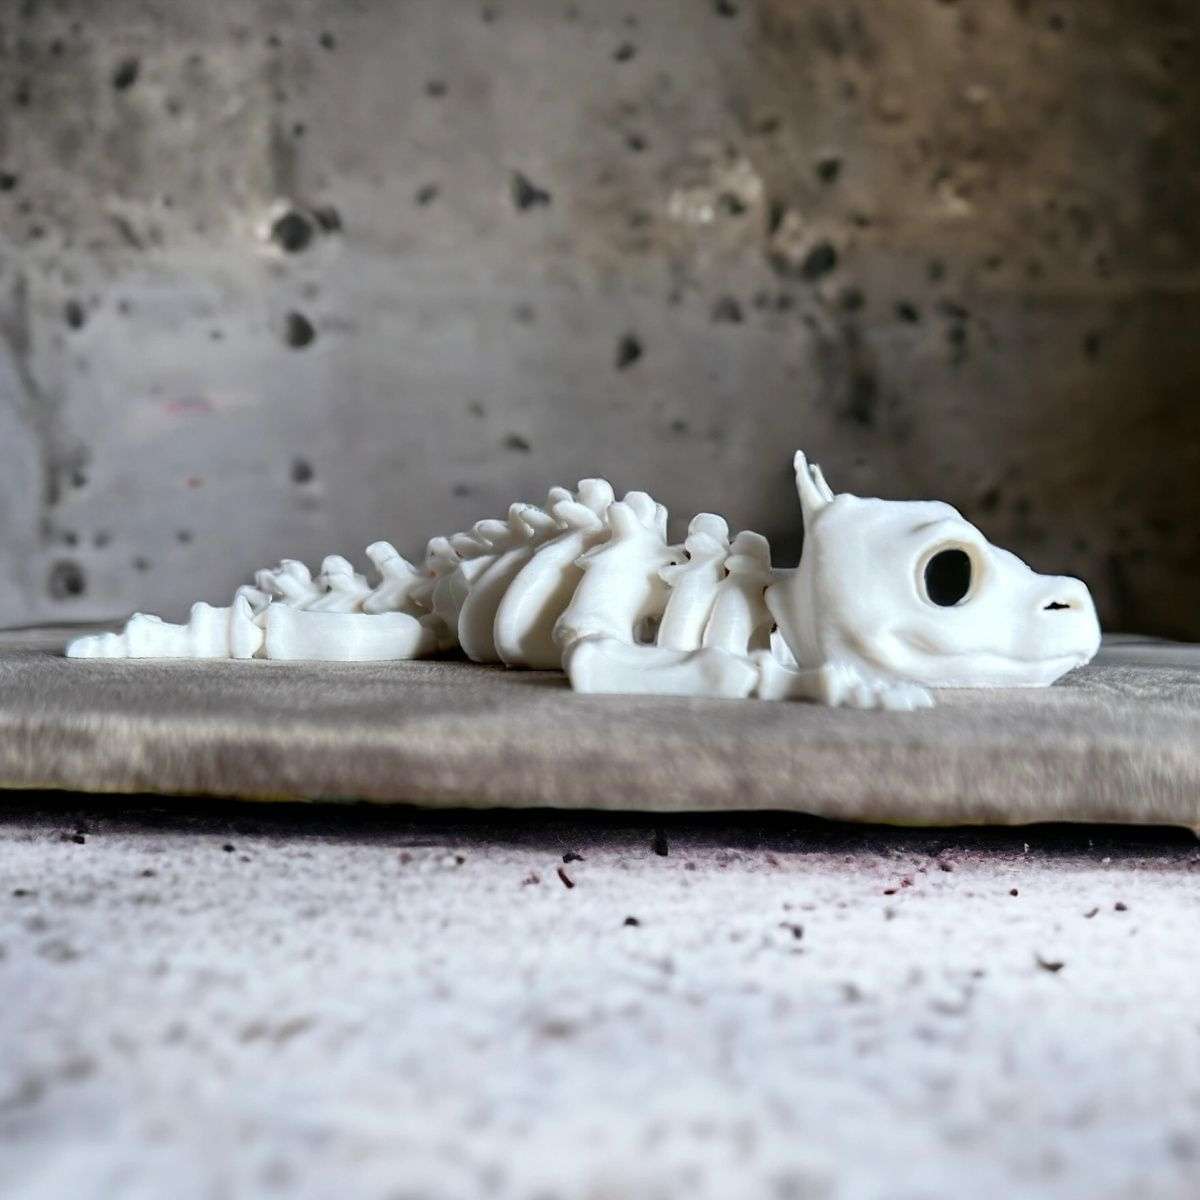 Dragon Skeleton Figure Toys